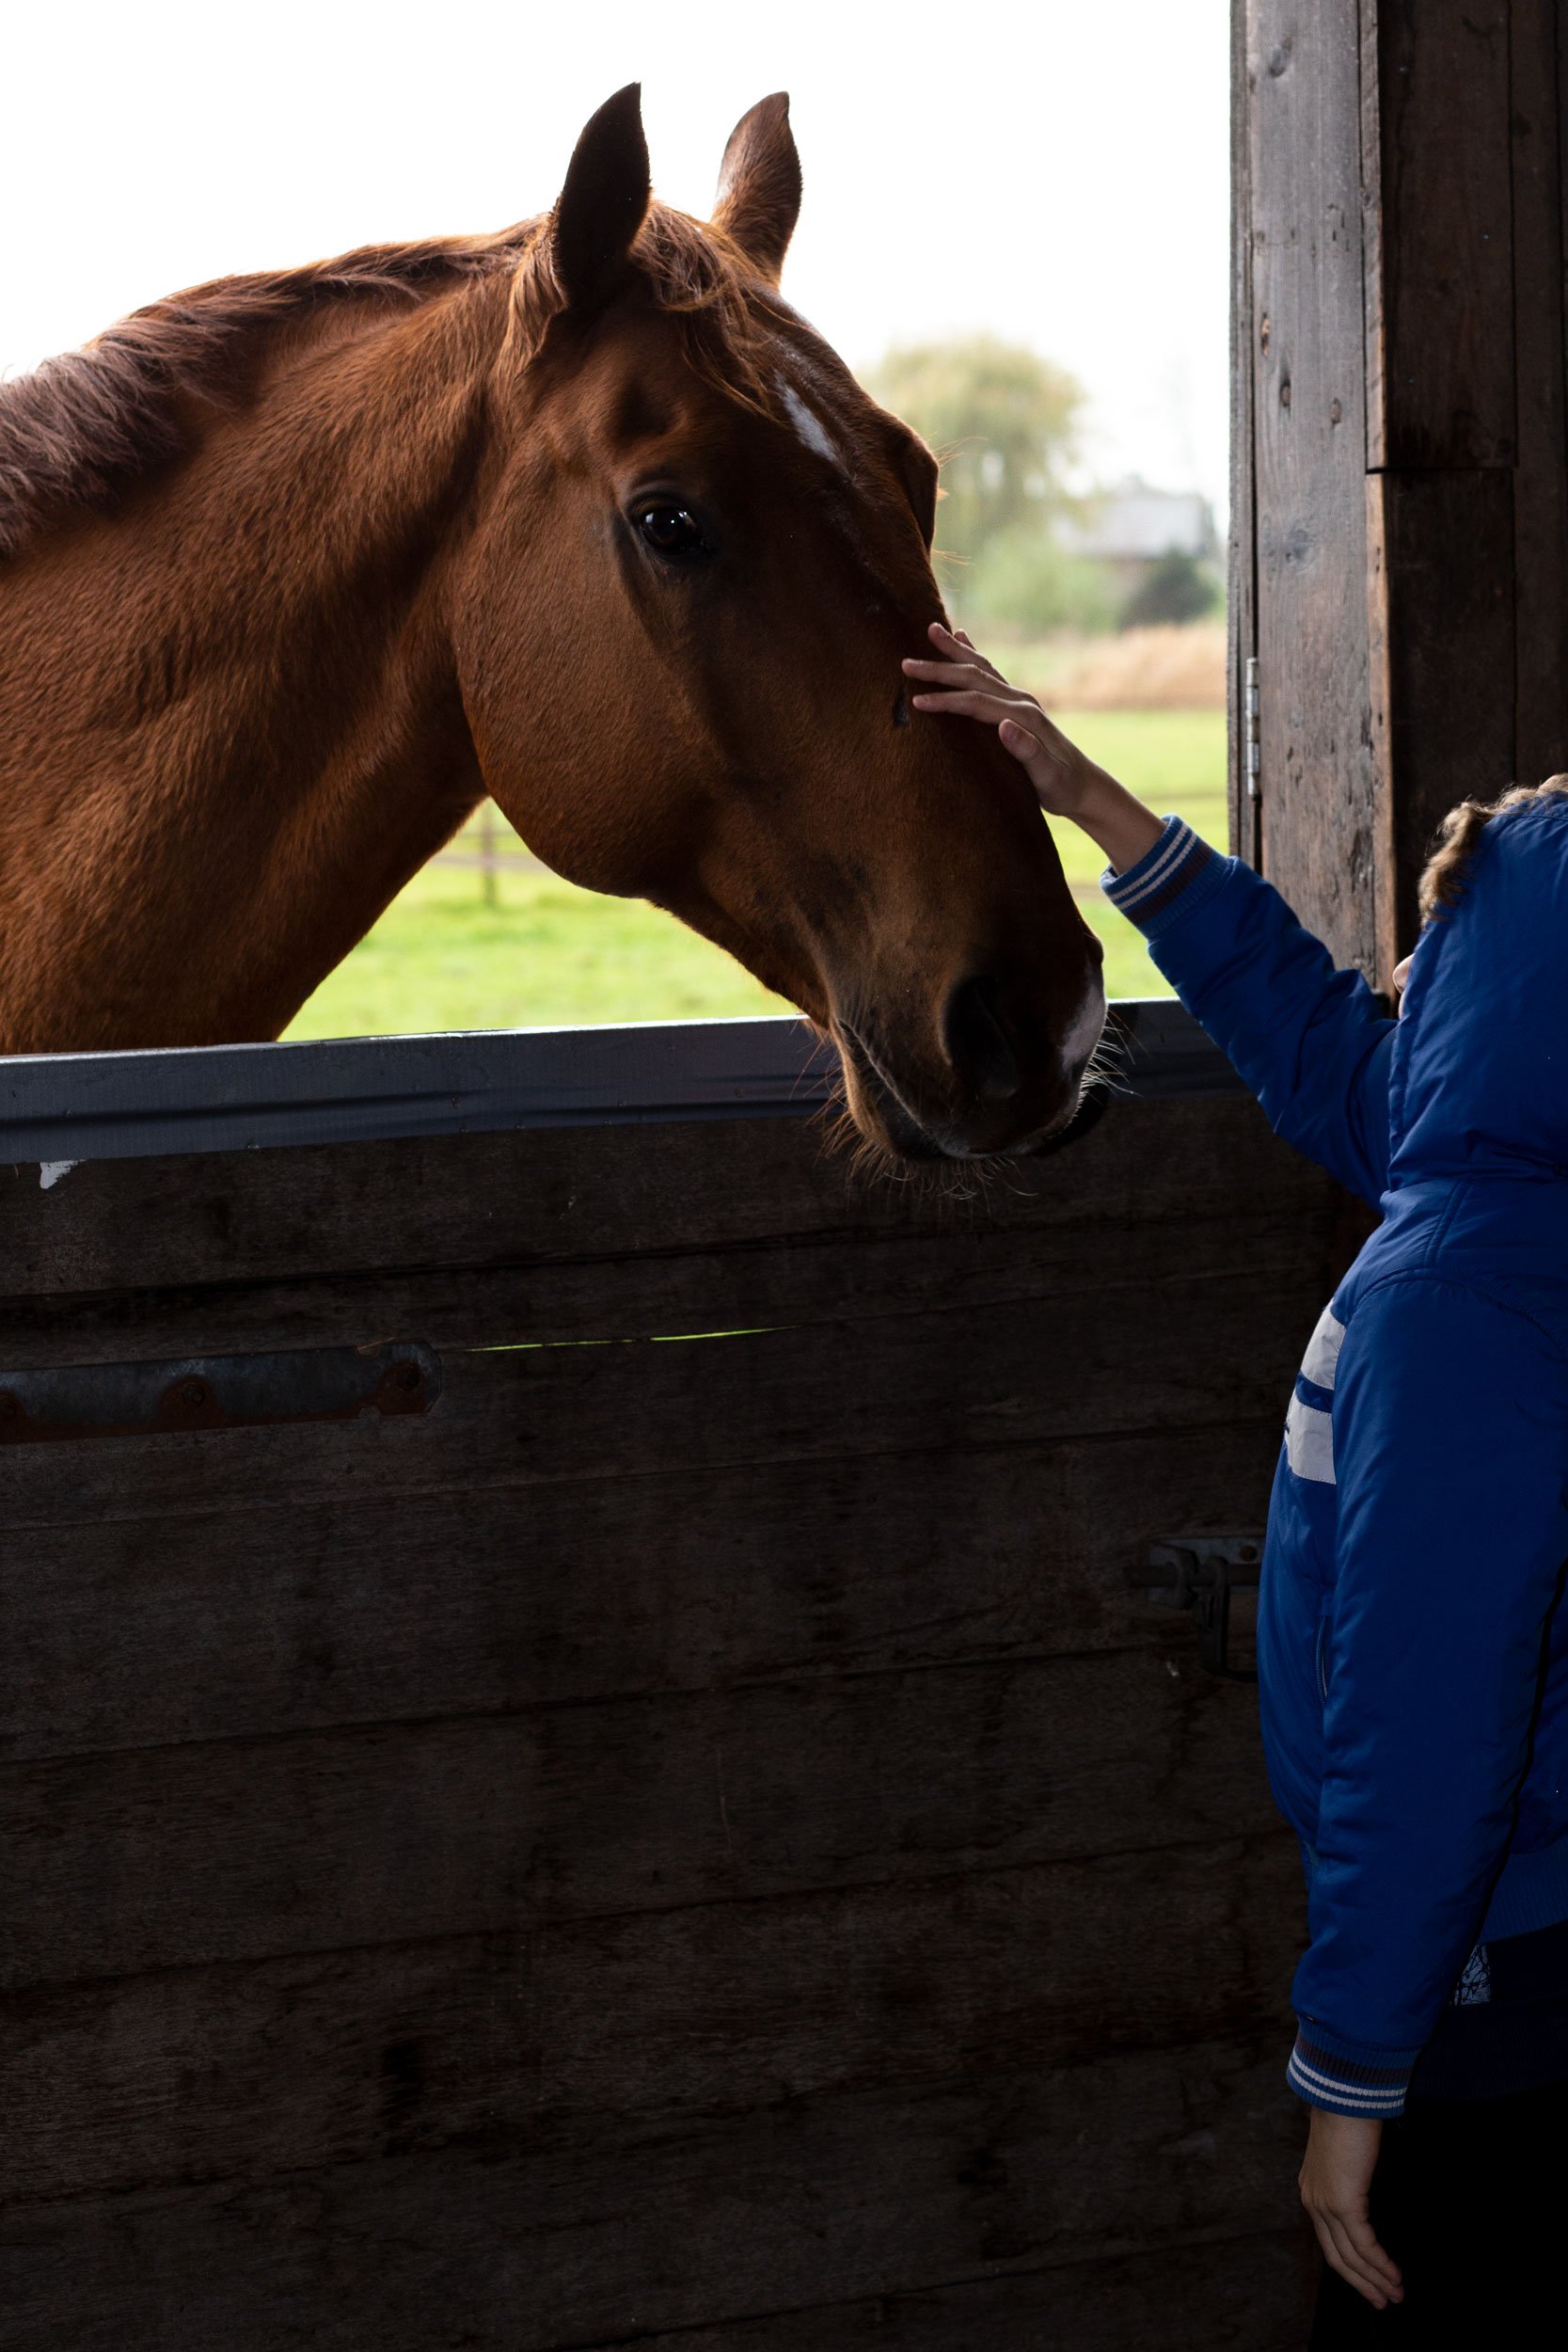 Contact paarden is therapeutisch kinderen met autisme”